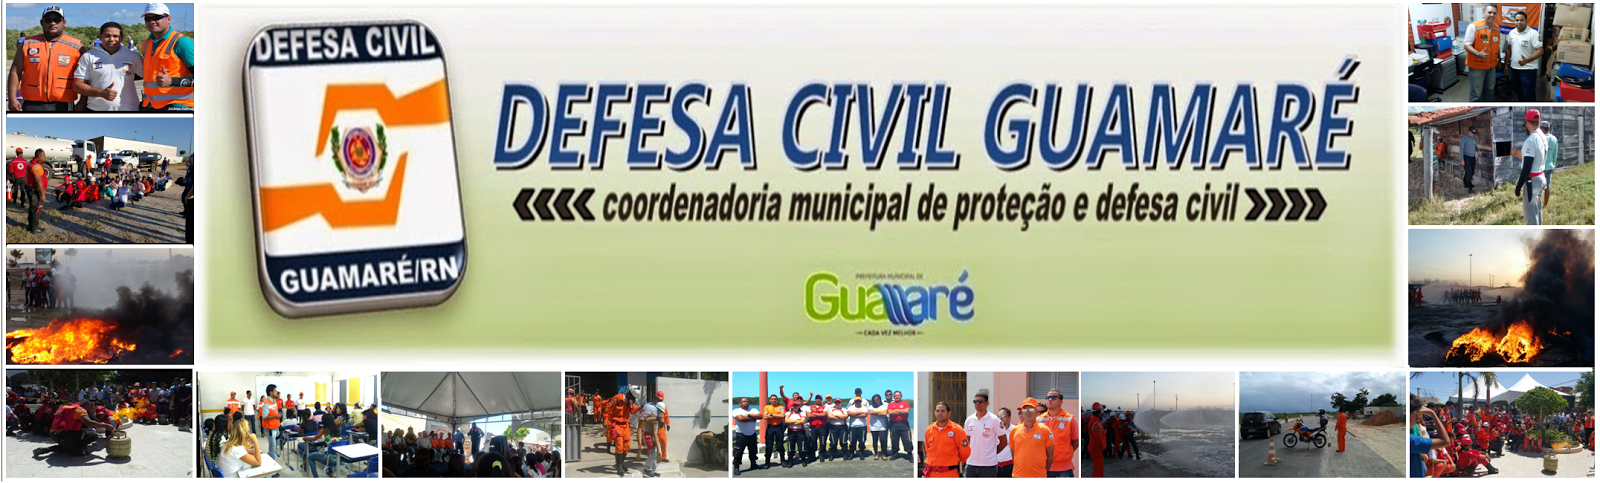 Defesa Civil Guamaré